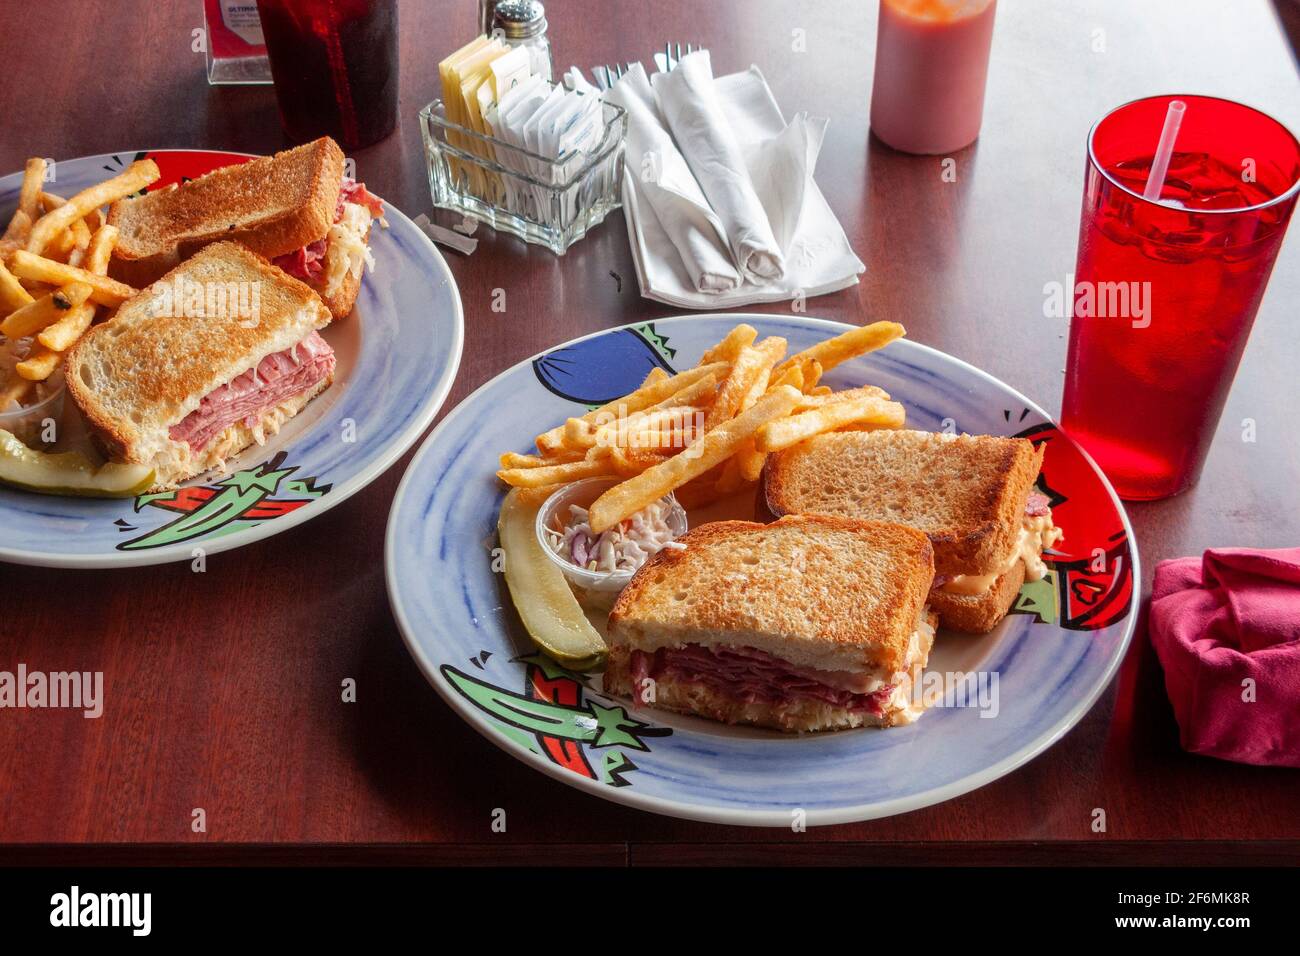 Deux assiettes avec sandwichs Reuben, pickle à l'aneth, salade cole ou coleslaw, frites ou chips, avec boissons. Banque D'Images